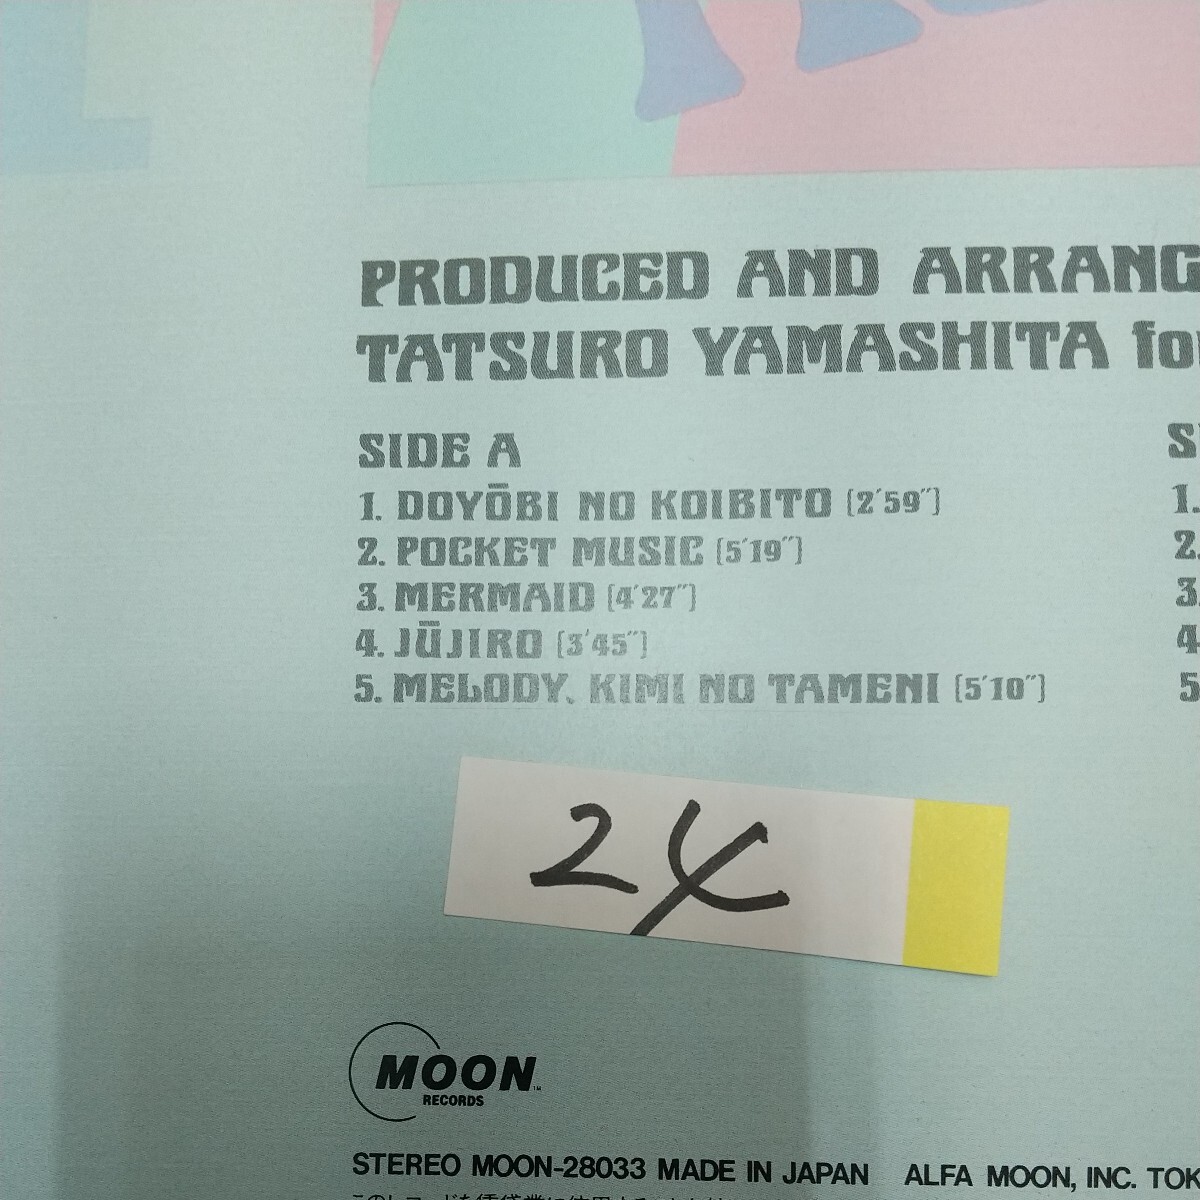 山下達郎 TATSURO YAMASHITA ポケット- ミュージック POCKET- MUSIC (24) の画像4